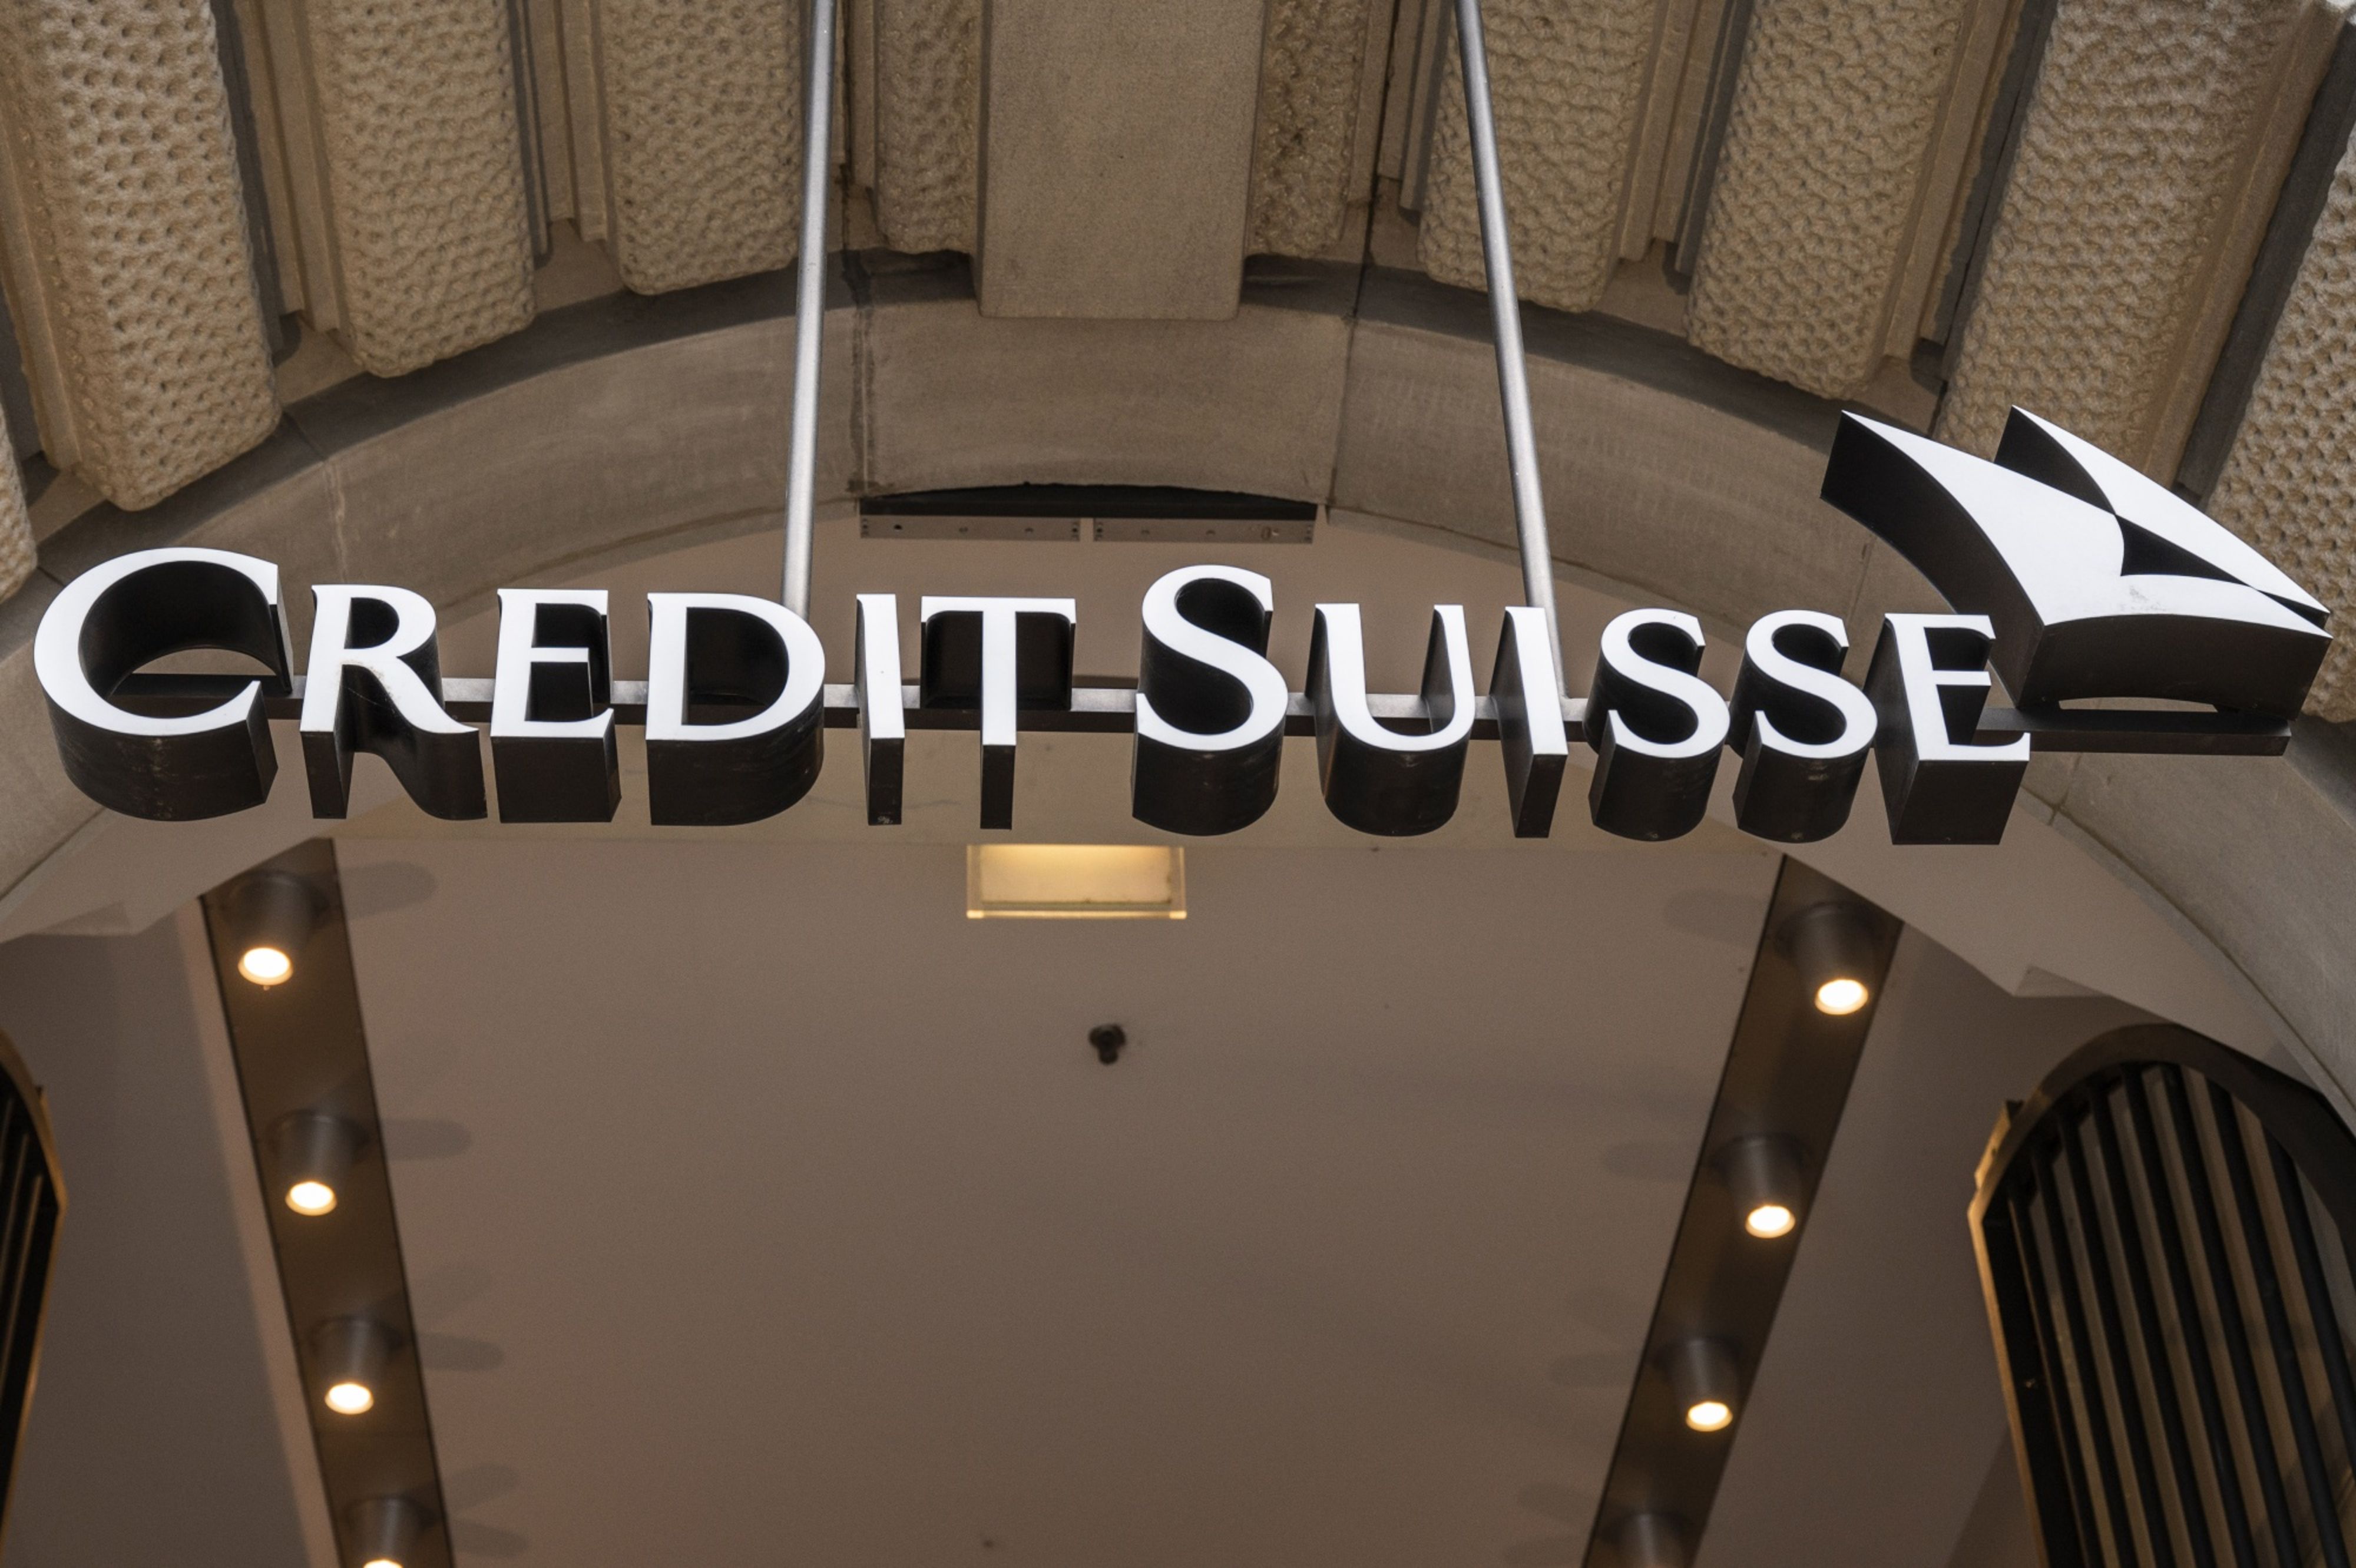 Banqueiros do Credit Suisse lutam para manter empregos no UBS, dizem fontes, Empresas